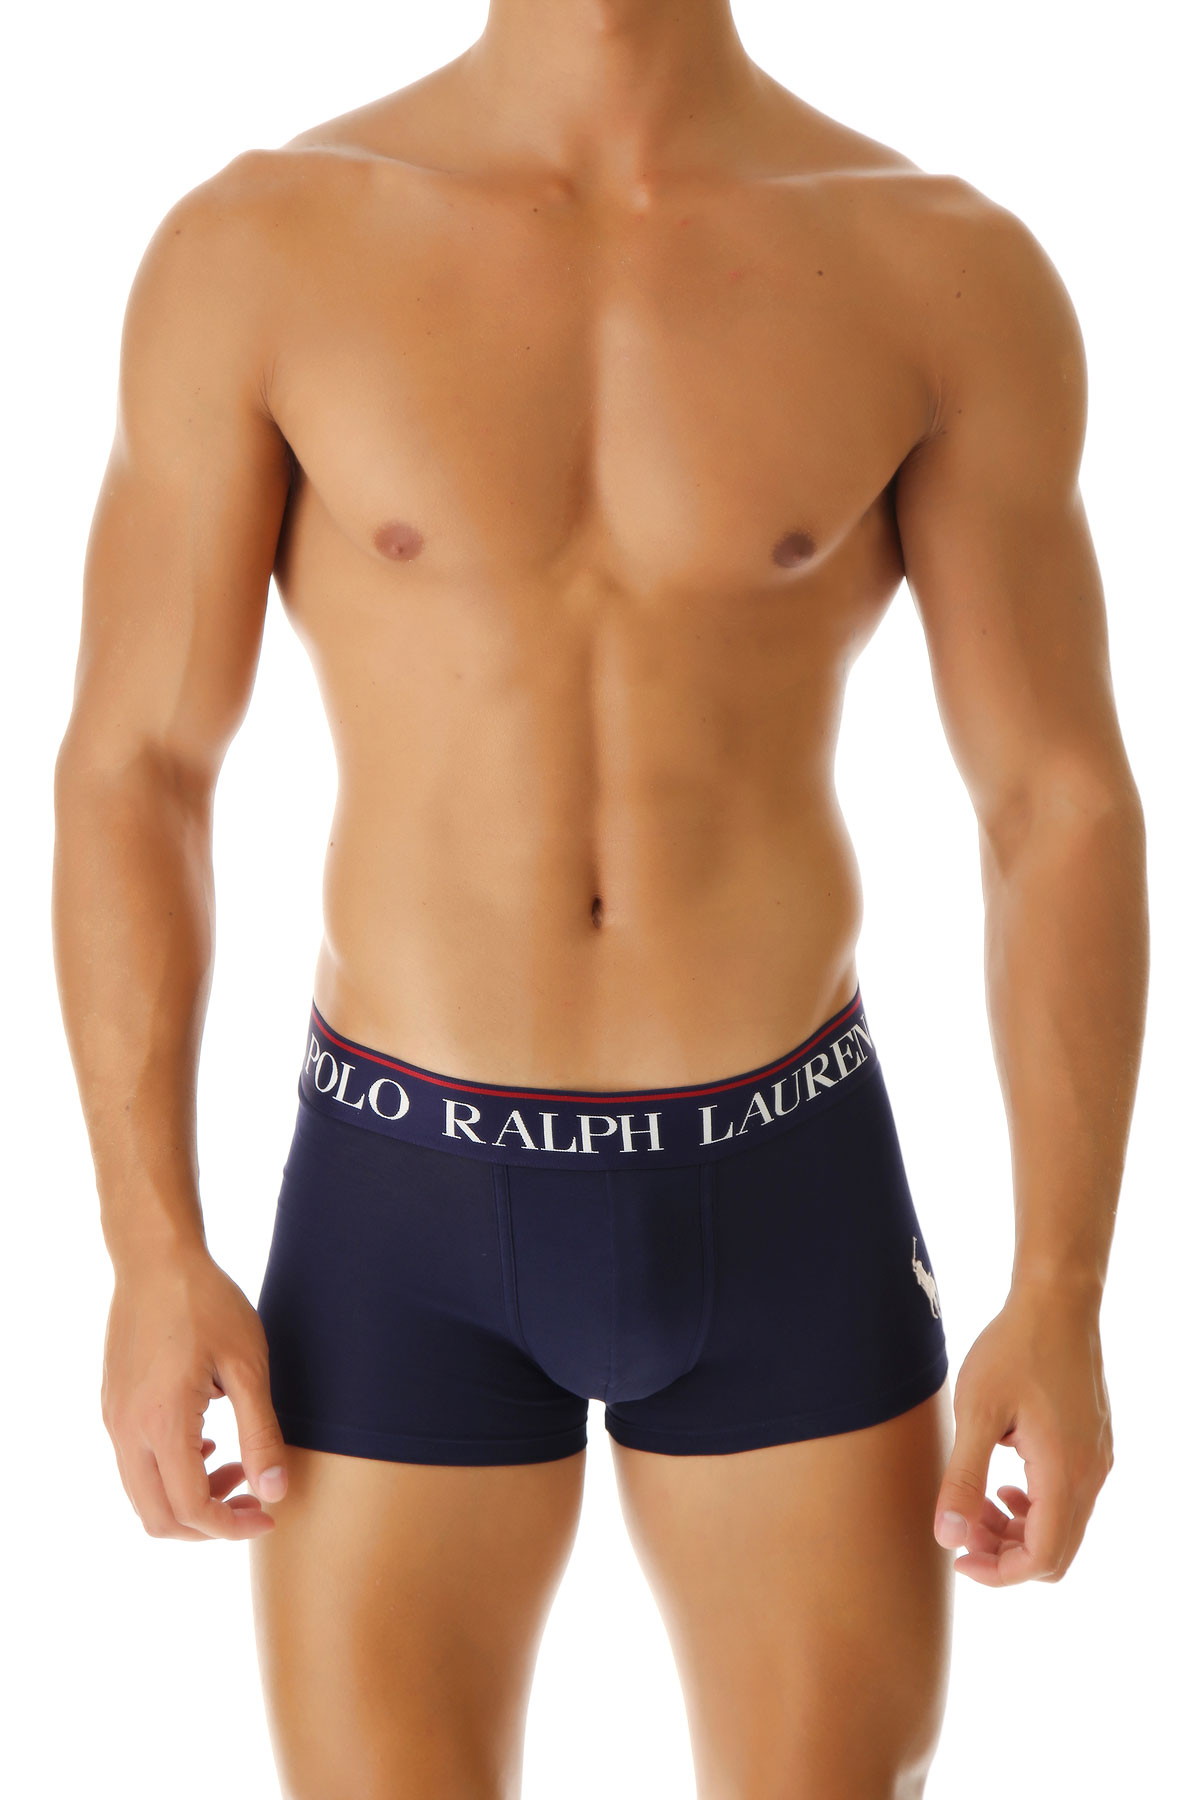 Ralph Lauren Boxer Shorts für Herren, Unterhose, Short, Boxer Günstig im Sale, Marineblau, Baumwolle, 2017, L M XL